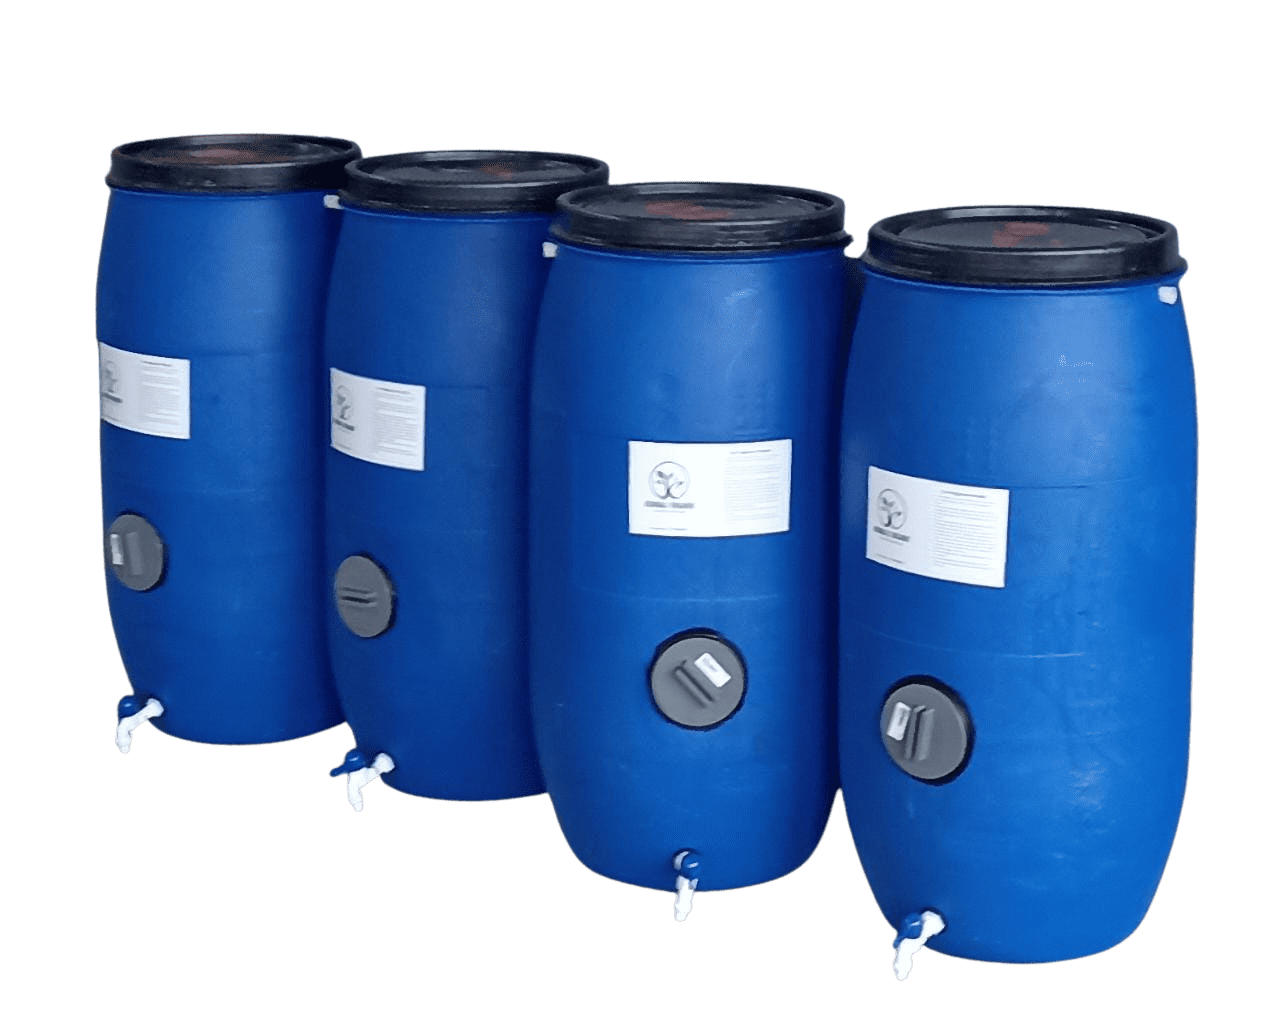 Composting Barrels